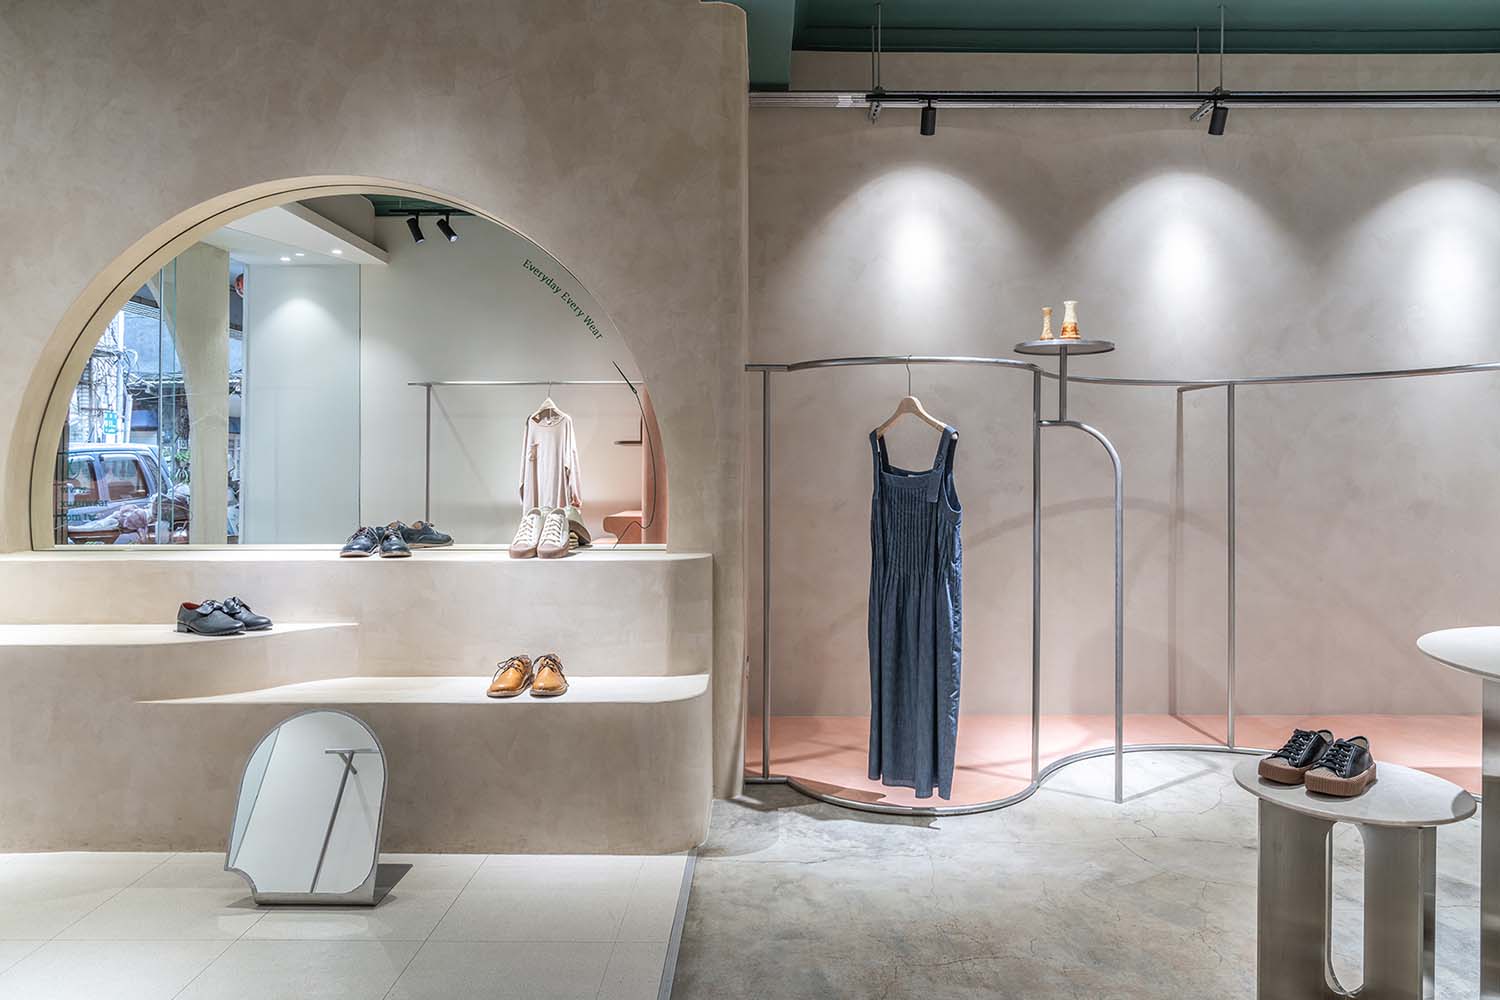 Toko Pakaian Xuxuwear oleh Tingyu Huang adalah Pemenang dalam Kategori Desain Ruang dan Pameran Interior, 2020 - 2021.